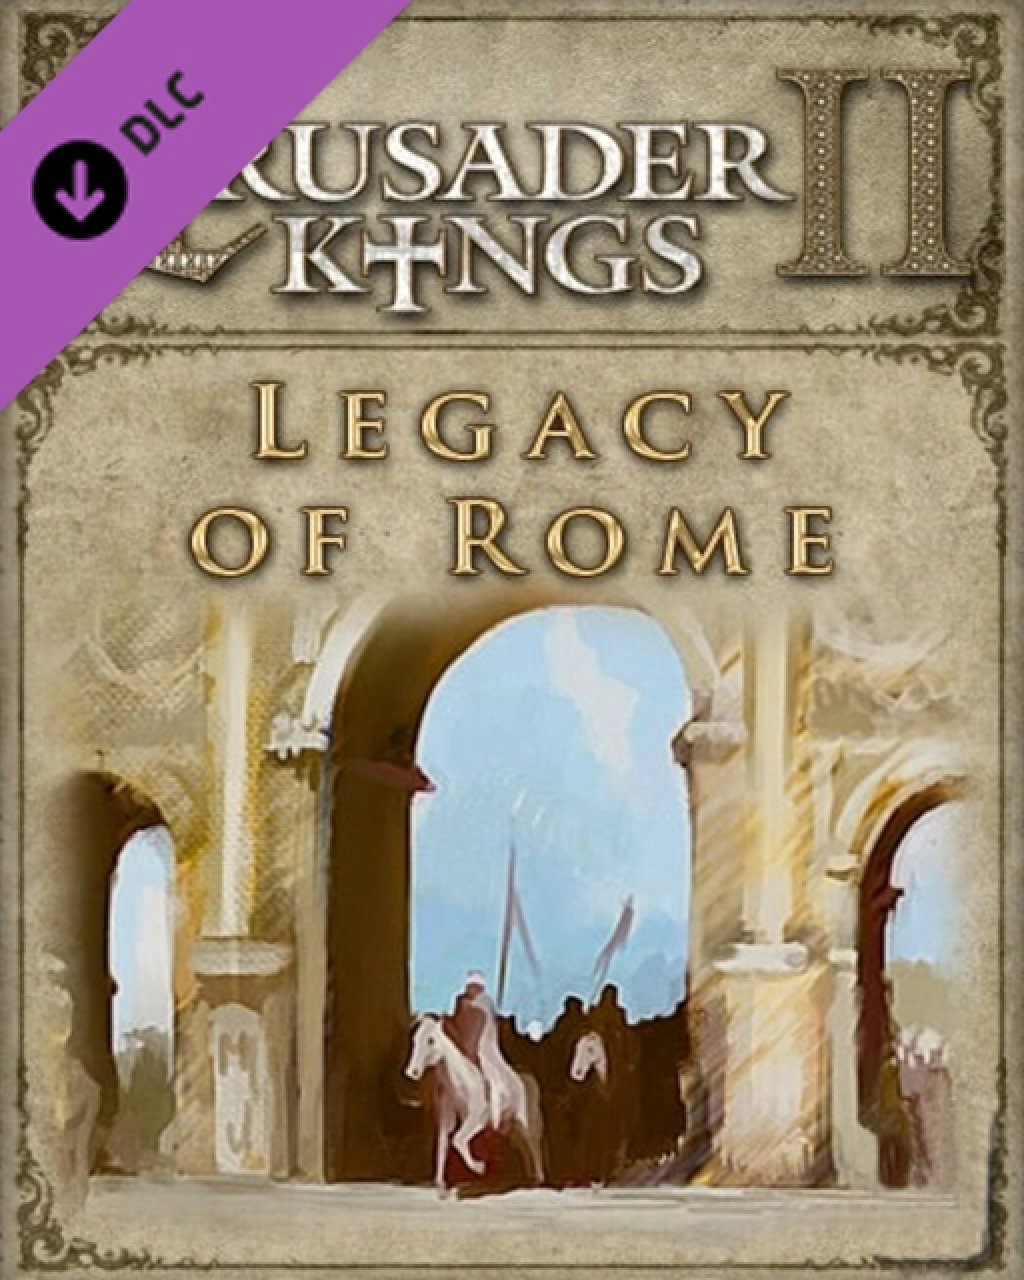 ESD Crusader Kings II Legacy of Rome